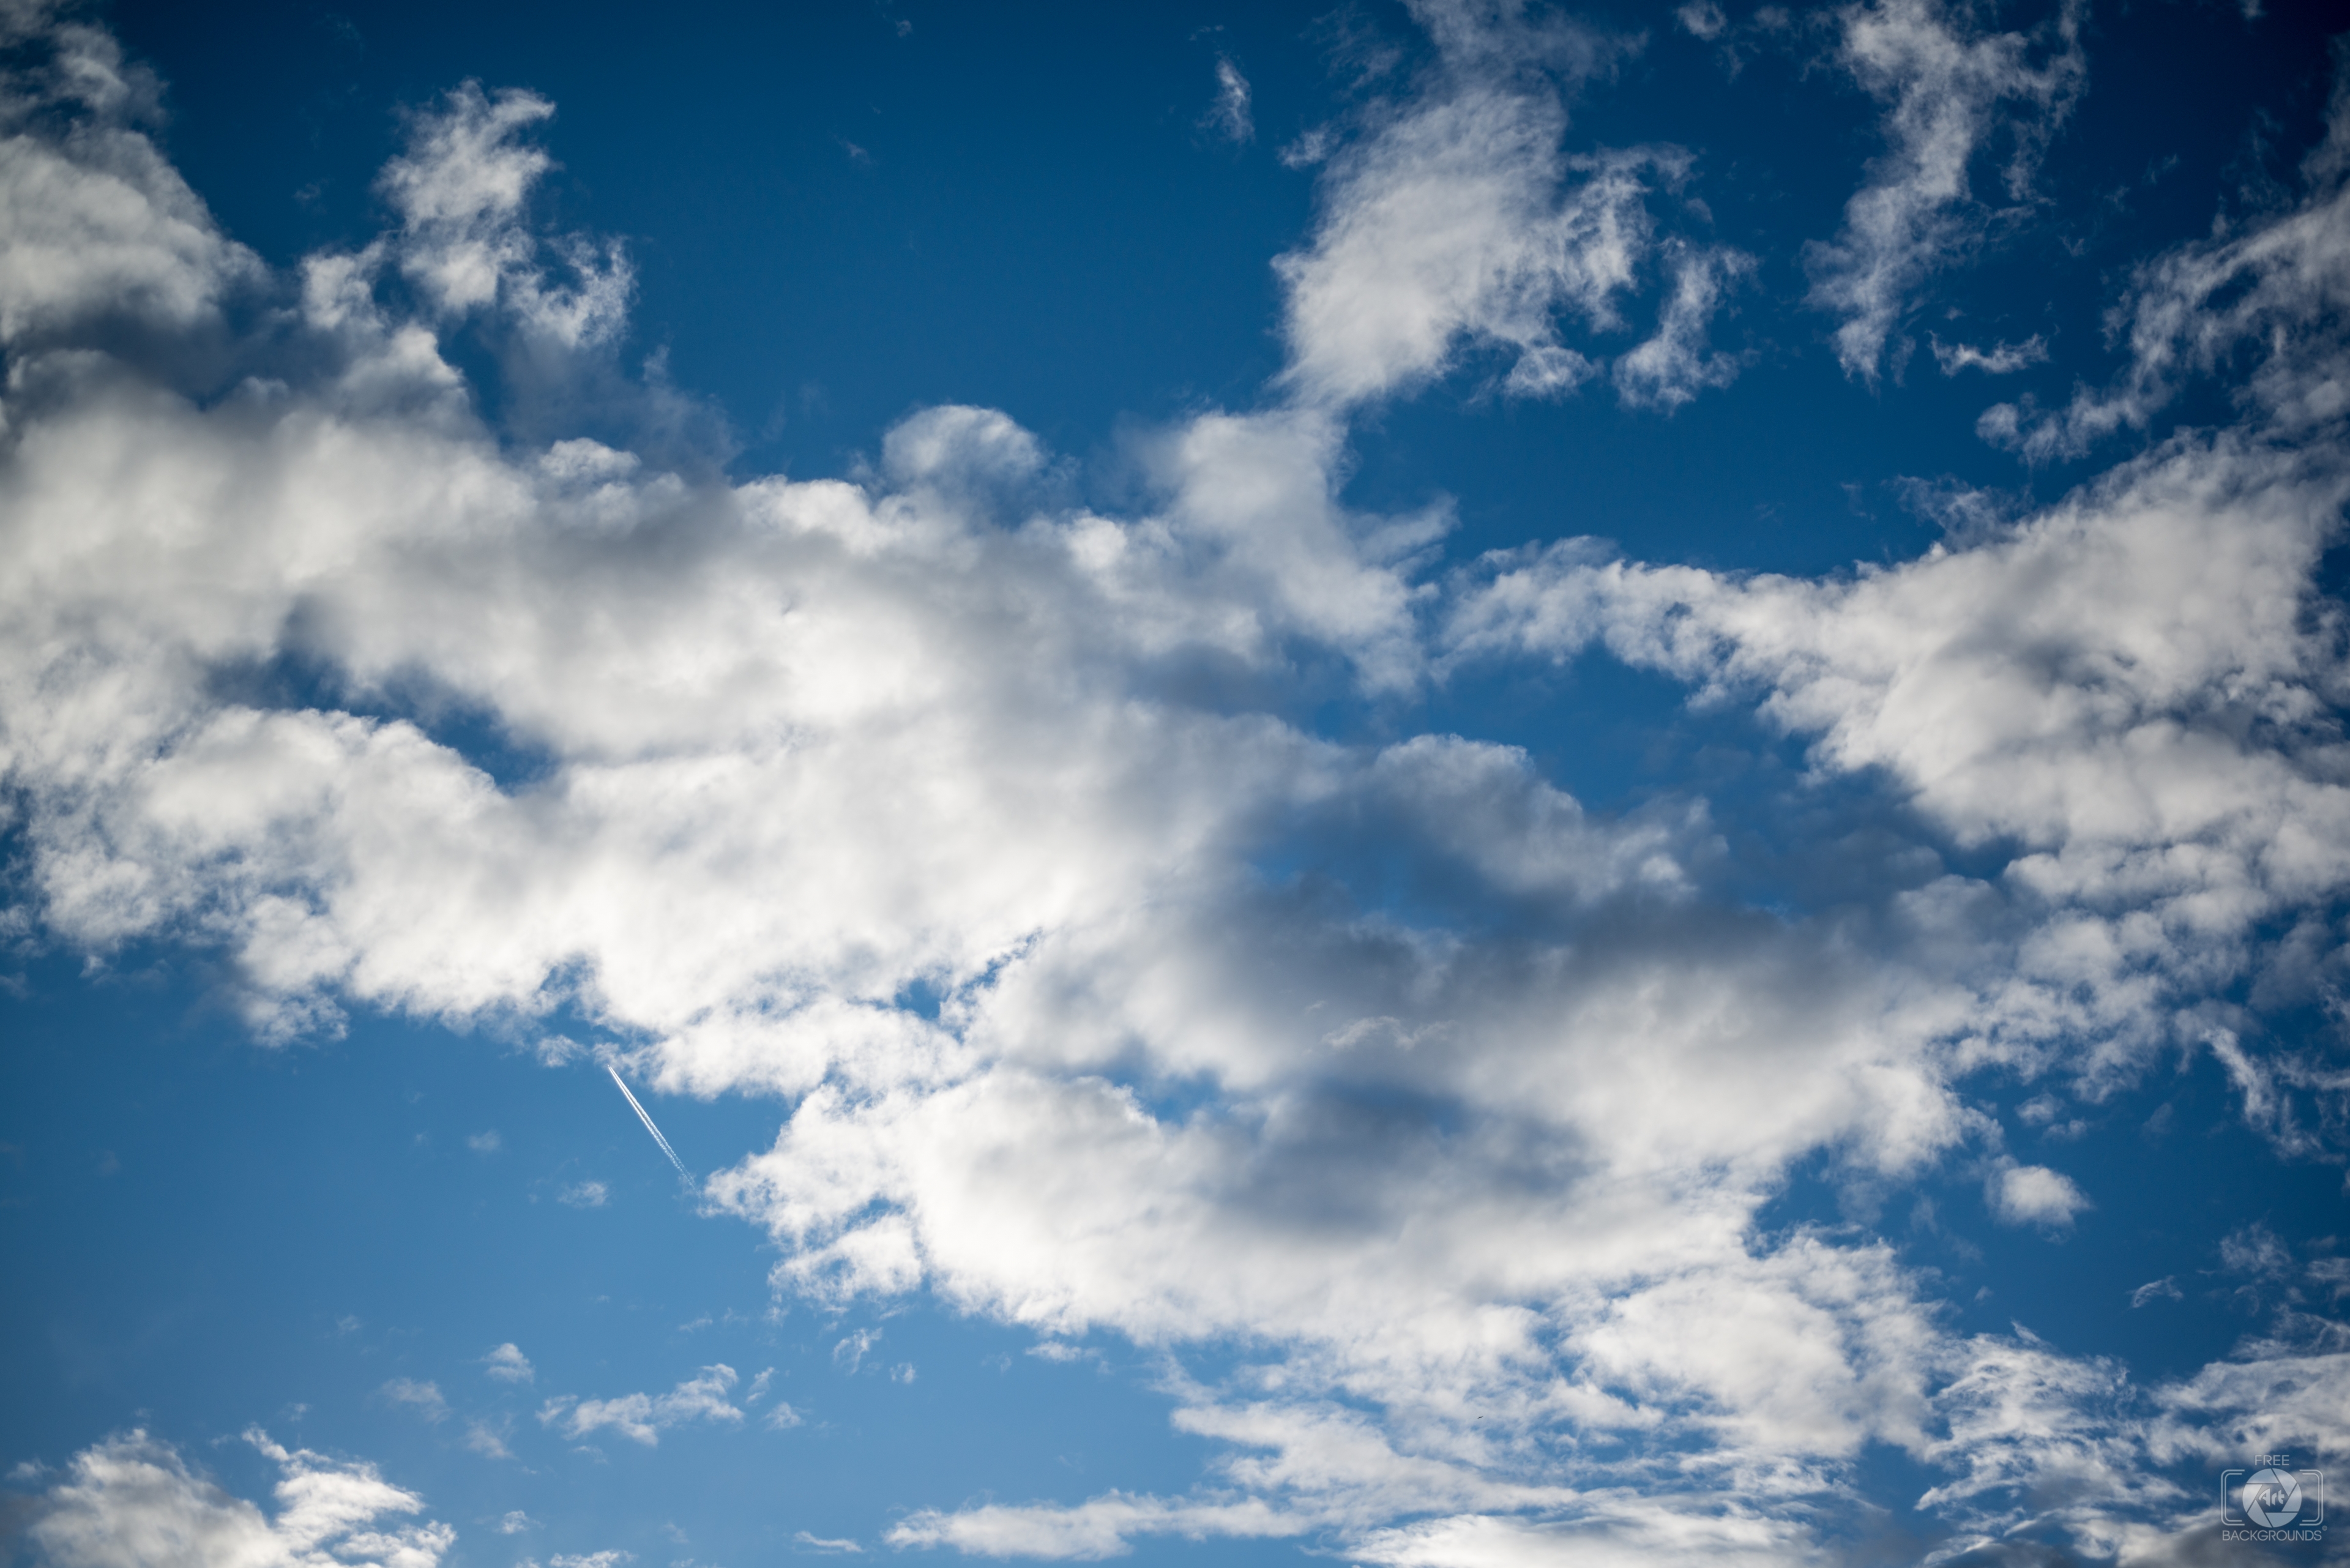 Ngắm nhìn nền bầu trời xanh nhiều đám mây đang di chuyển, biến đổi là một hình ảnh đẹp mang nhiều ý nghĩa của thiên nhiên và cuộc sống. Hãy tận hưởng khoảnh khắc yên bình, thư giãn cùng nền mây xanh trên bầu trời nhé!